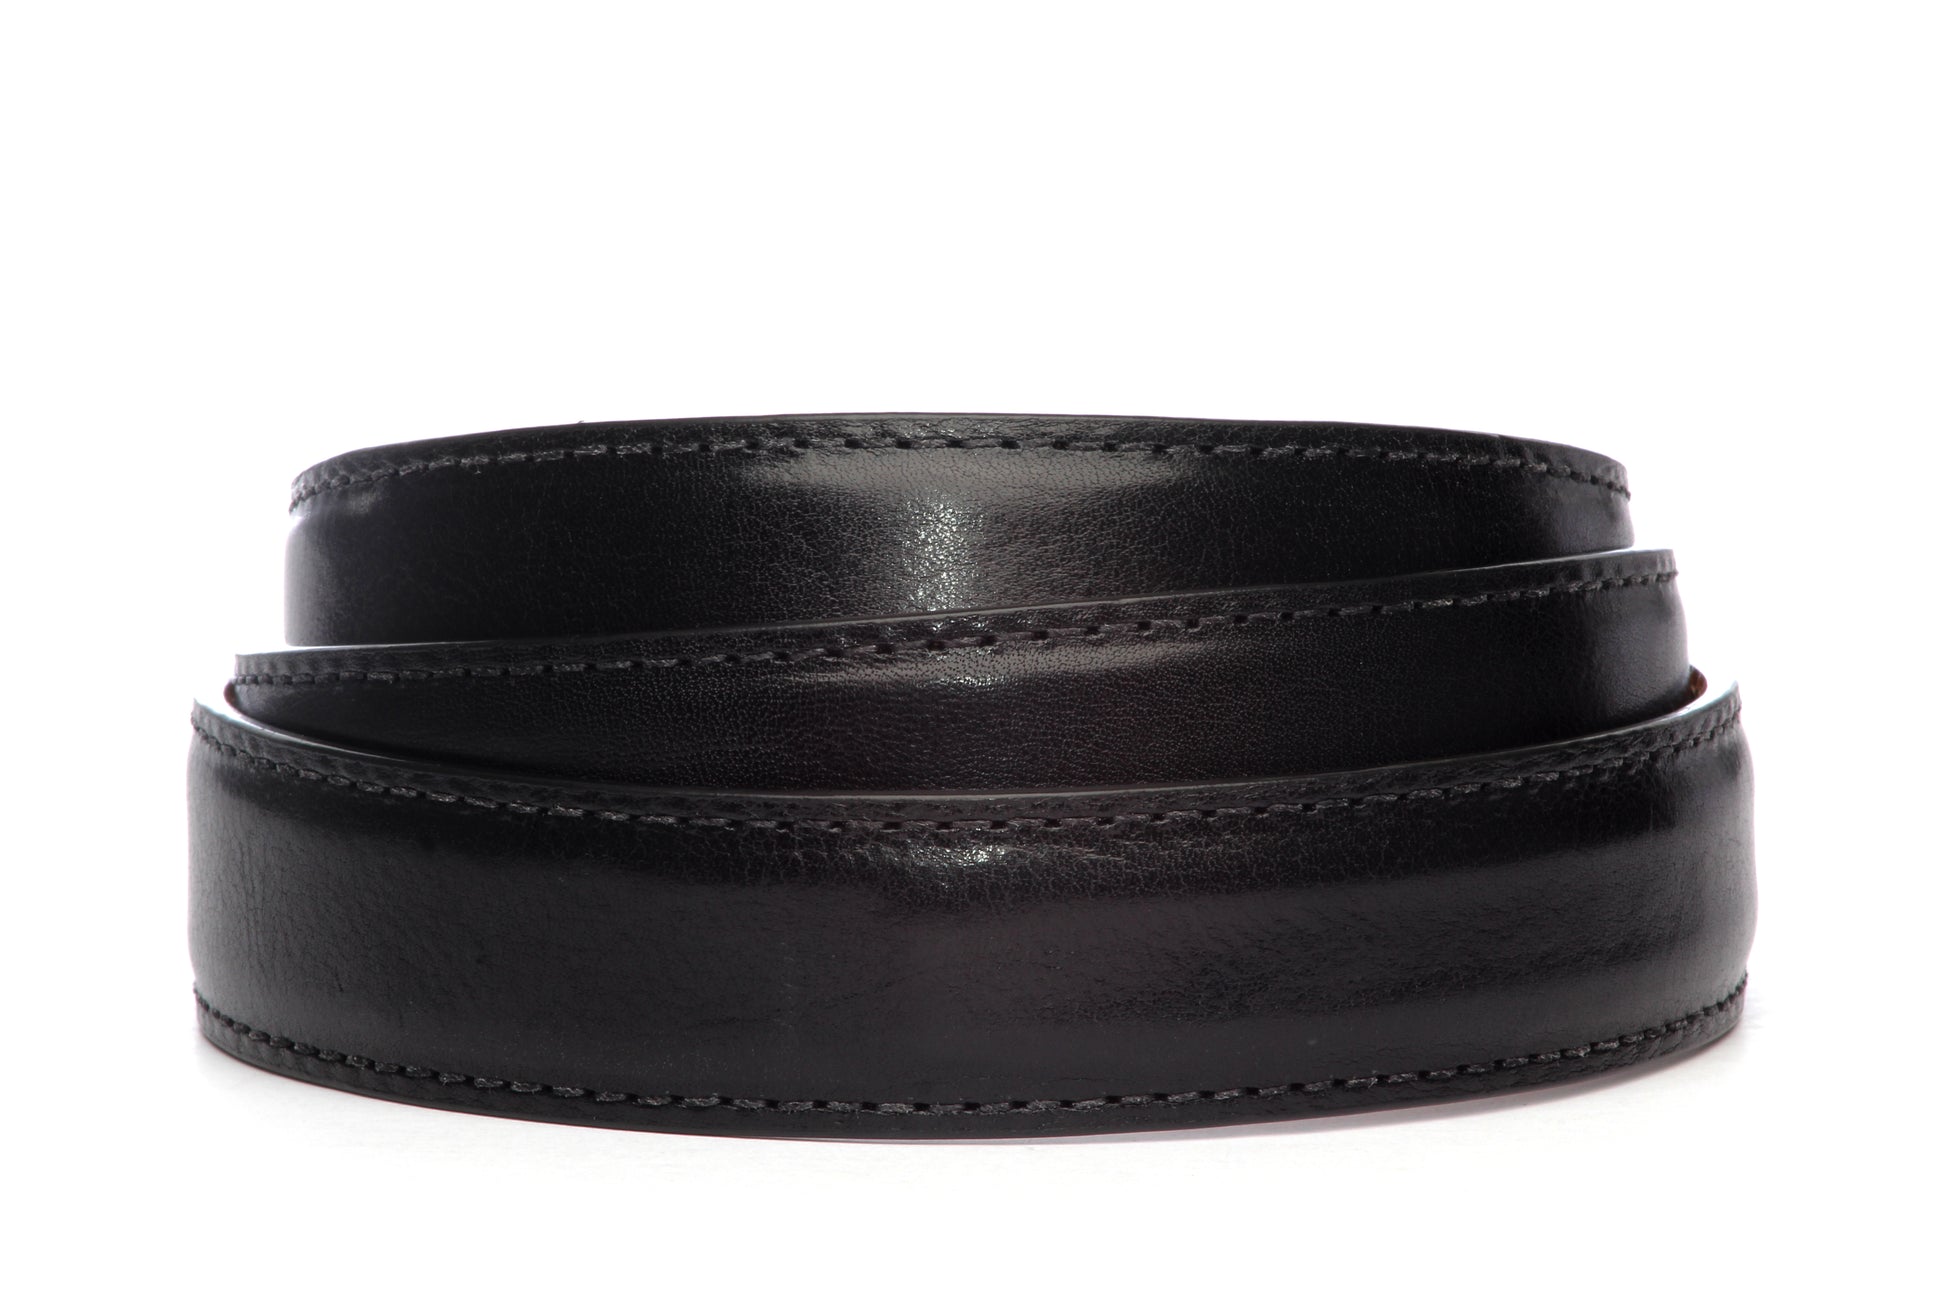 Men's Italian calfskin belt strap in black with a 1.25-inch width, formal look